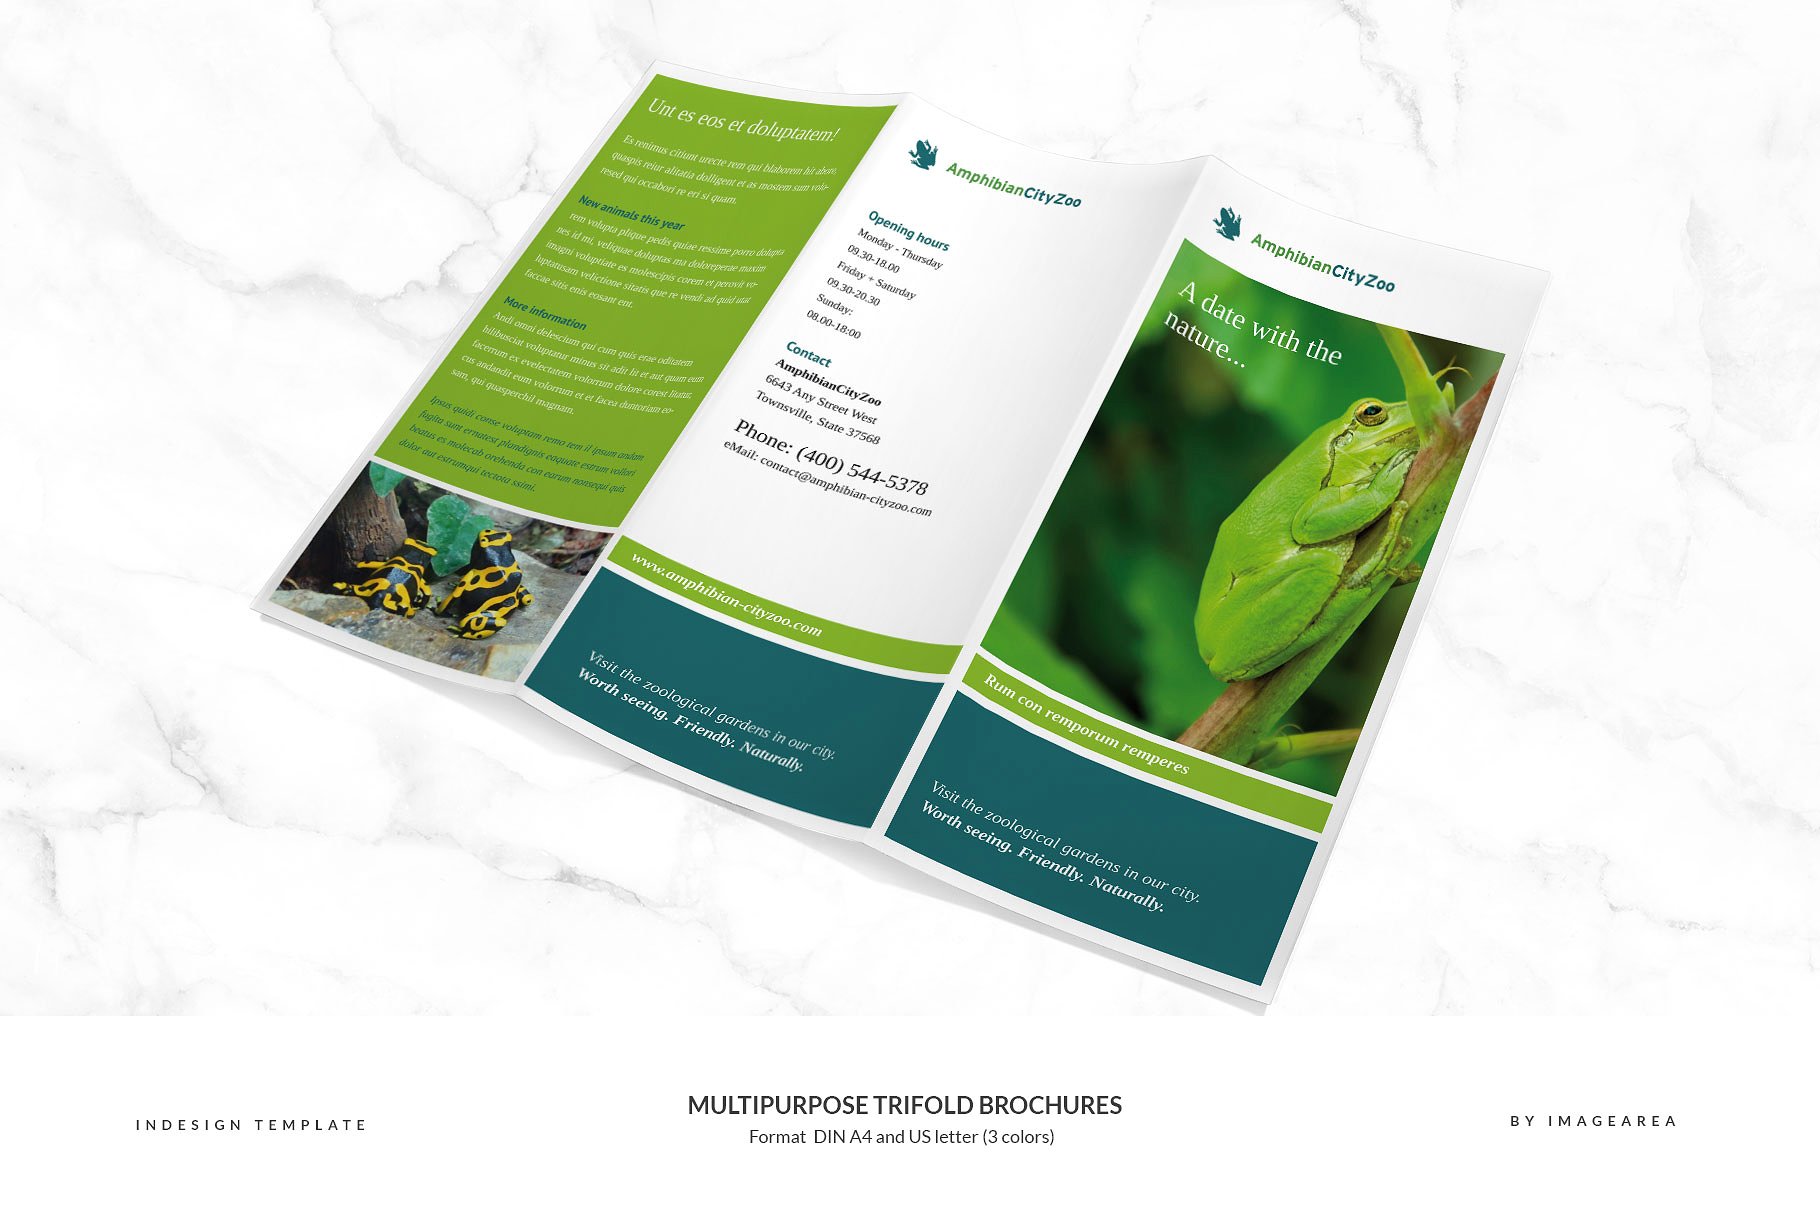 企业商业多用途折页小册子模板 Multipurpose Trifold Brochures插图(3)